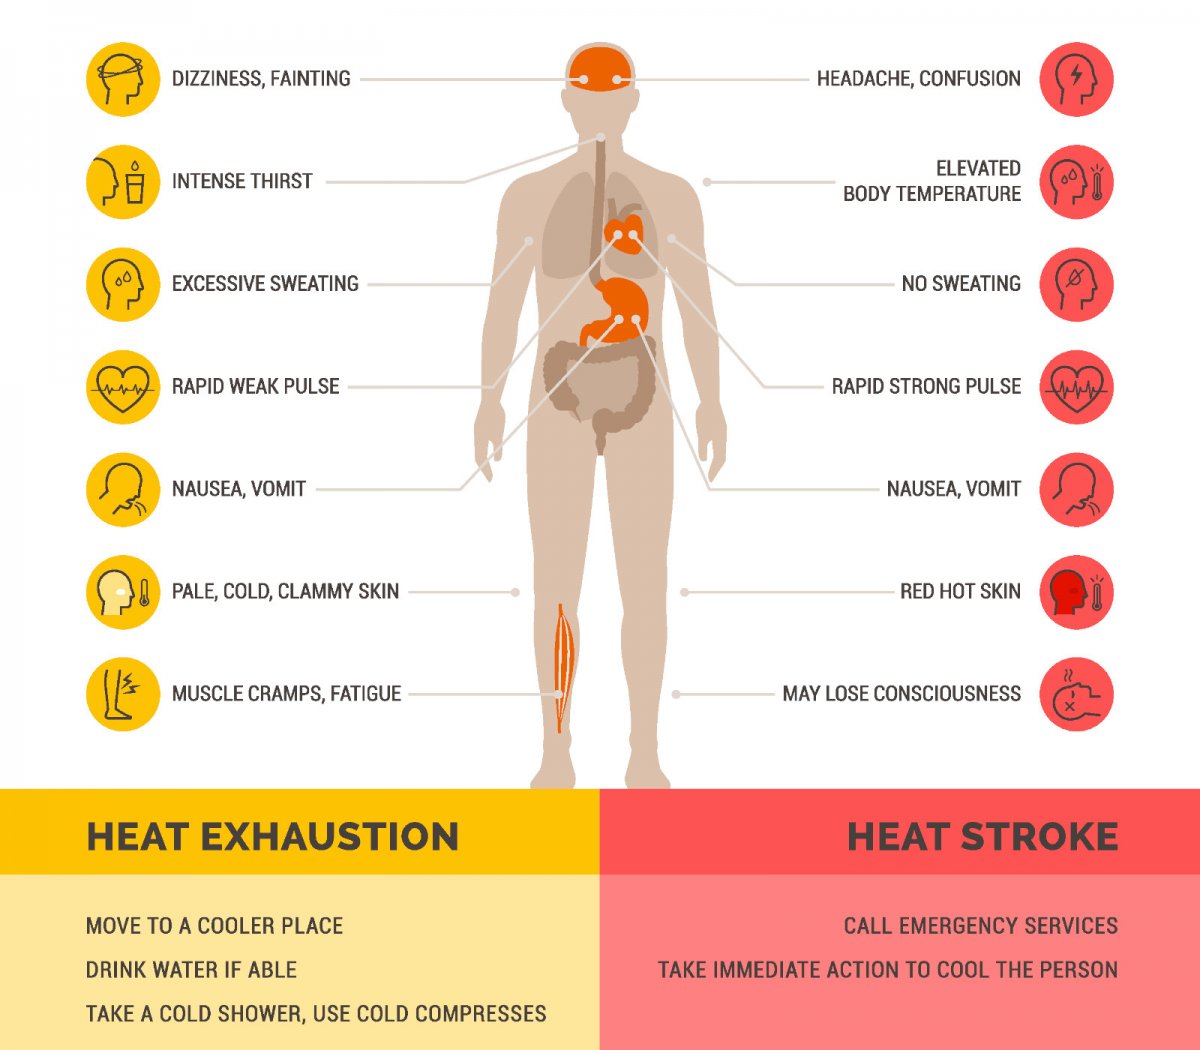 The symptoms of heat stroke